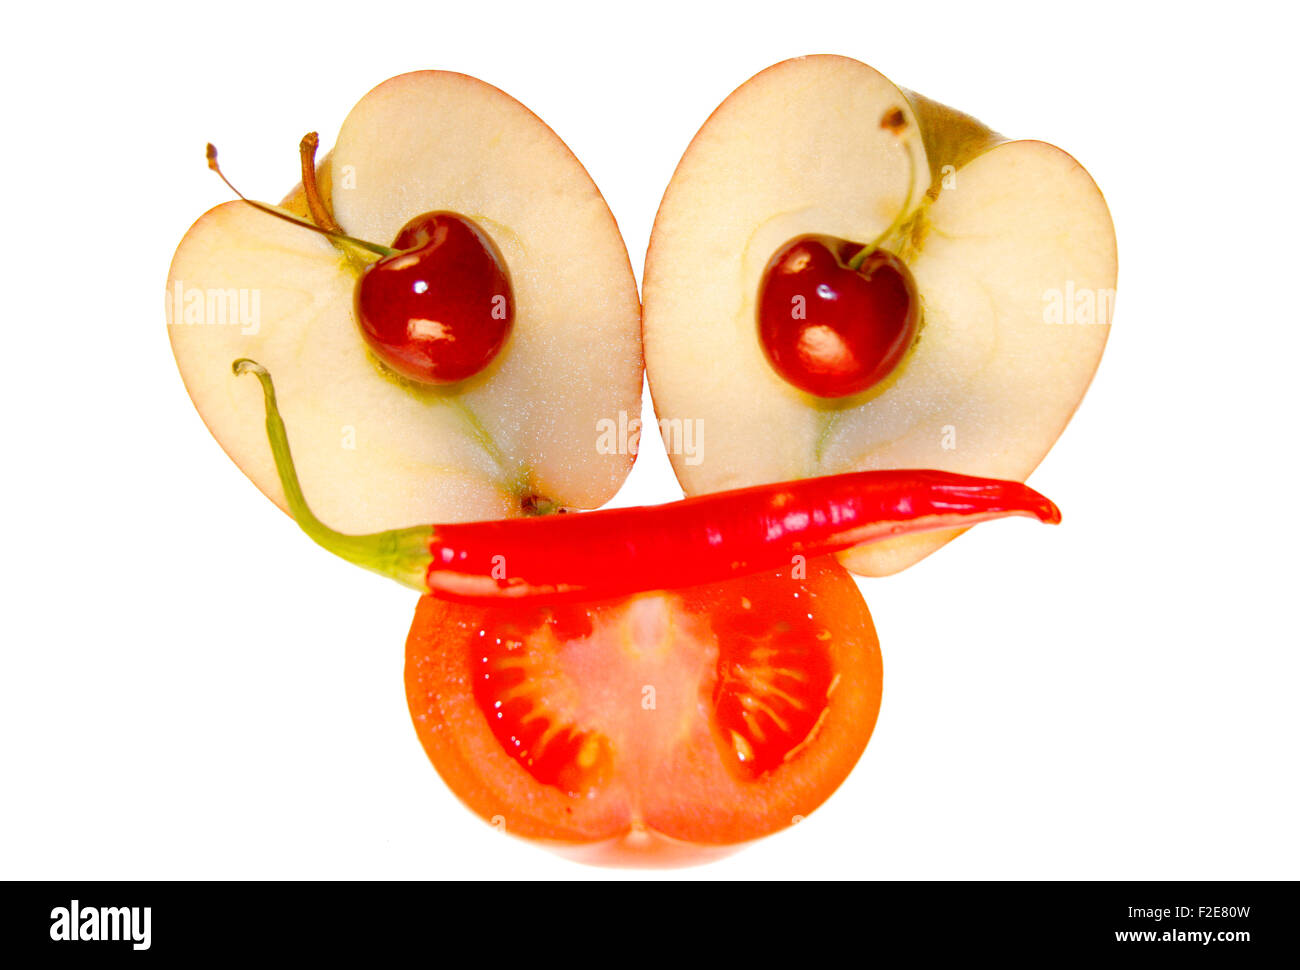 Gesicht/ face: Kirschen, Apfel, Tomate, Chilly - Symbolbild Nahrungsmittel. Stock Photo